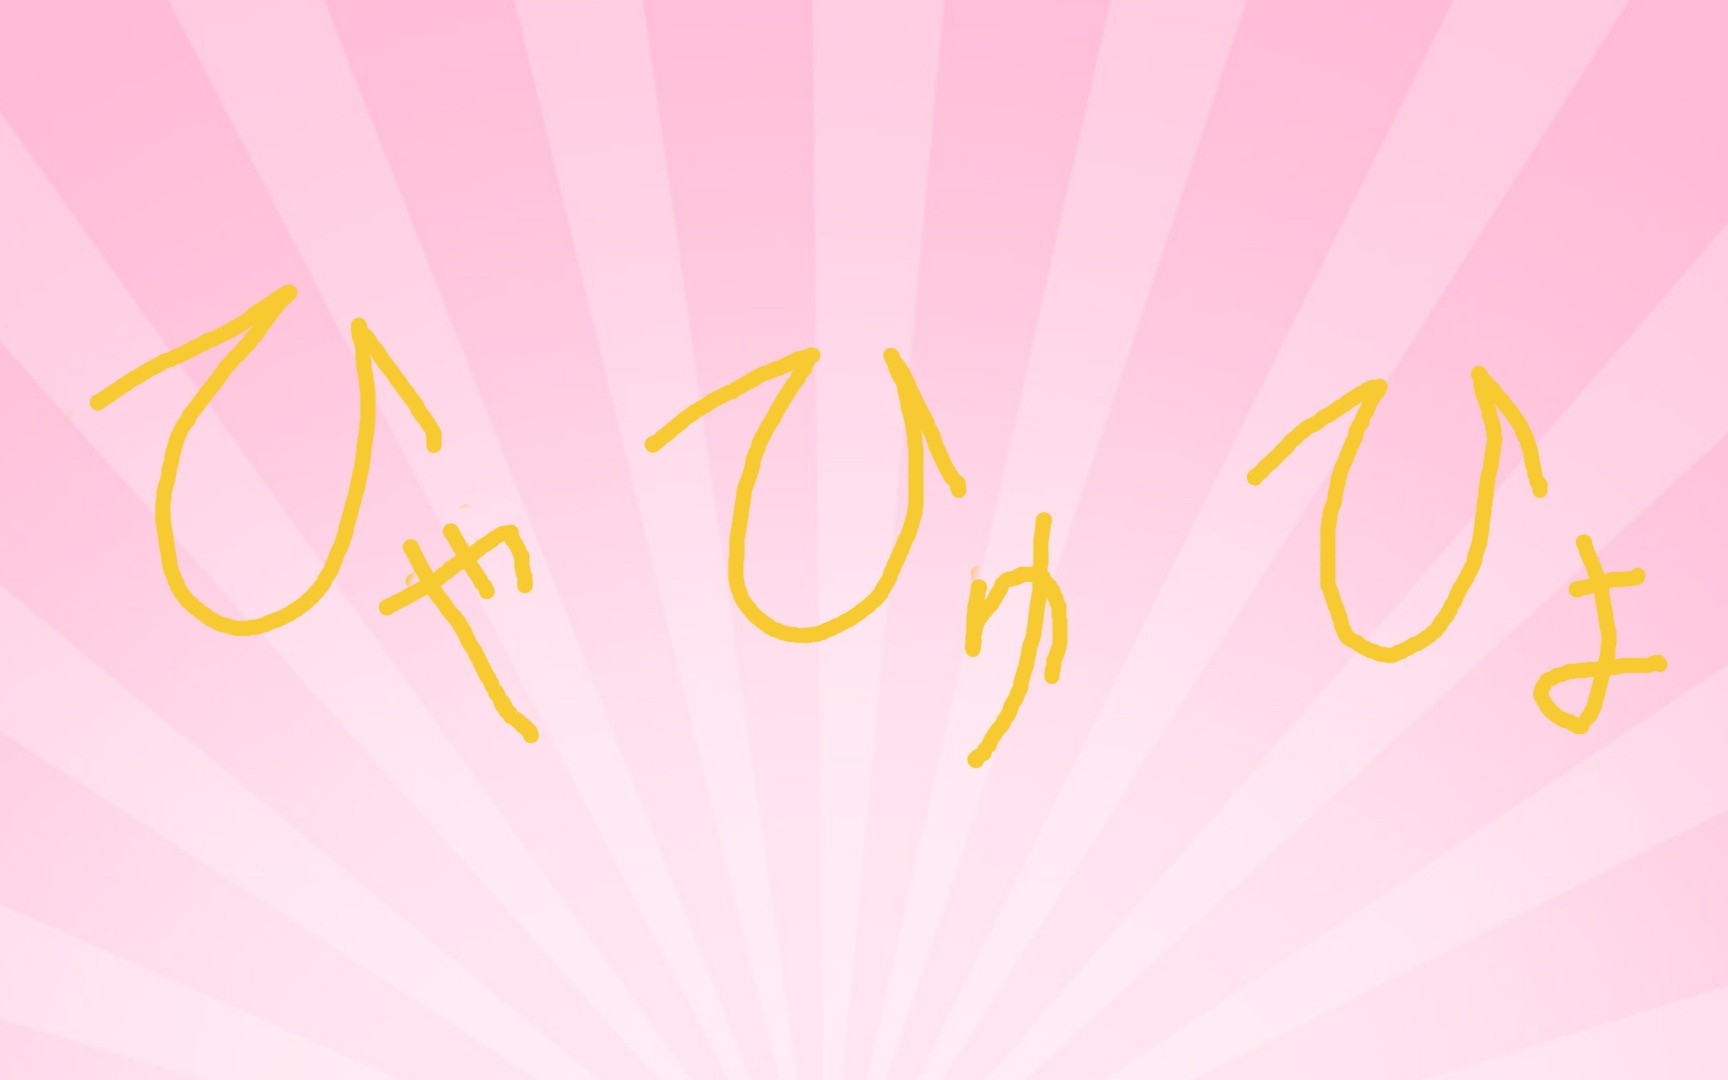 【日语五十音】手把手教你认识和书写假名 第十期